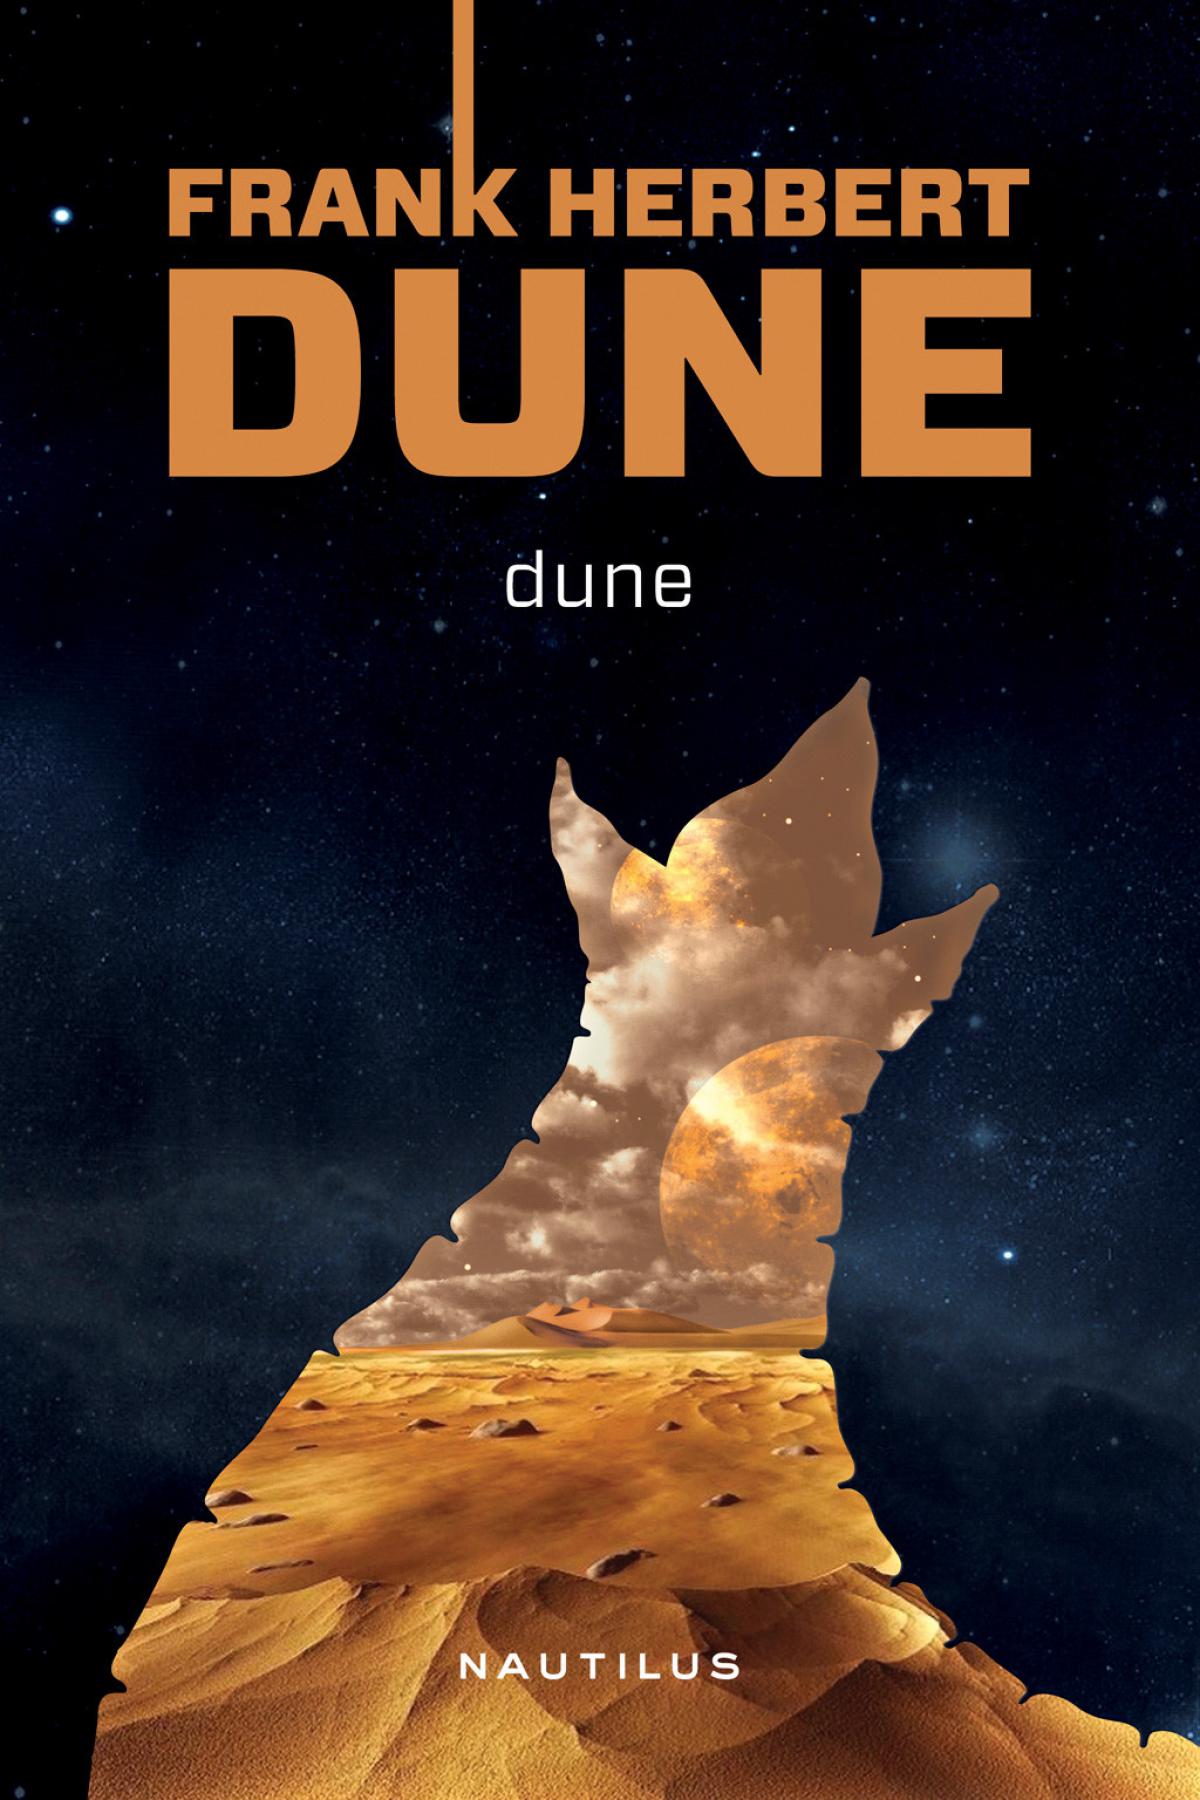 Дюна обложка. Фрэнк Герберт "Дюна". Dune Frank Herbert обложки. Frank Herbert s Dune обложка. Герберт Фрэнк - Дюна постеры.